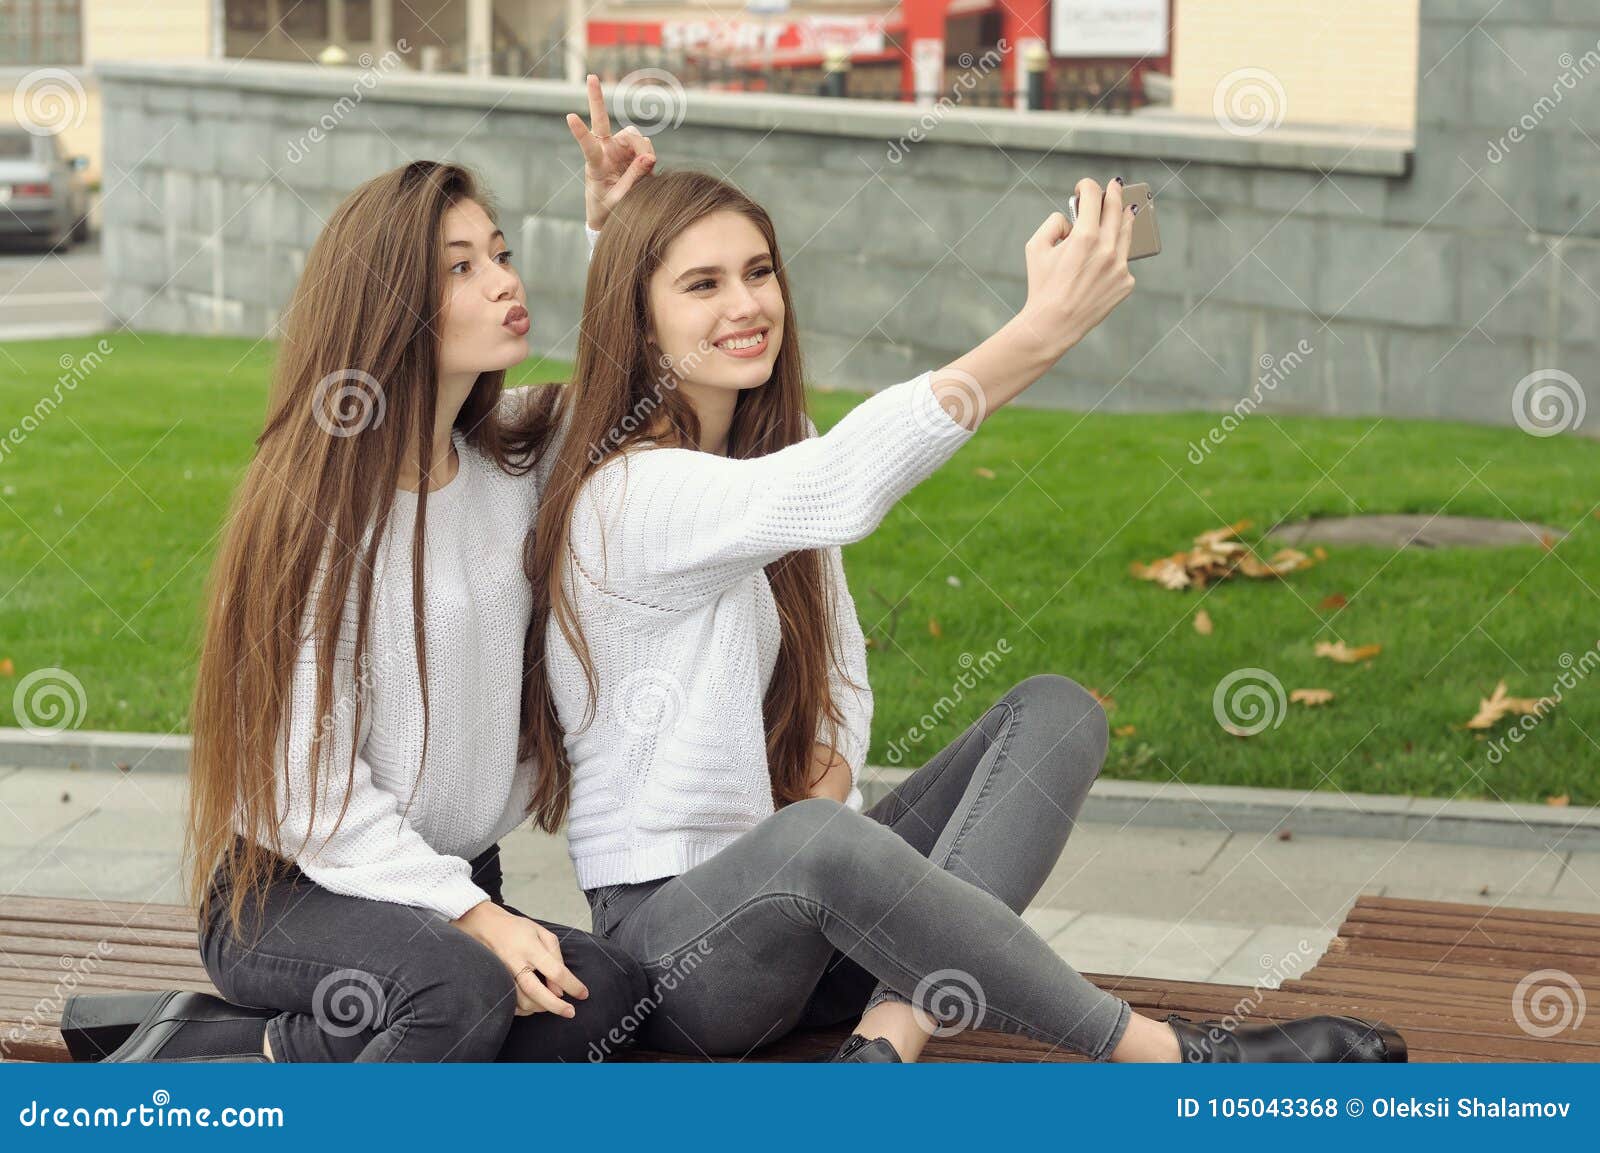 Пока подружка не видит. Девушка показывает рожки. Подруга поставила рожки. Обе фотографии. Женщина показывает рожки подруге.